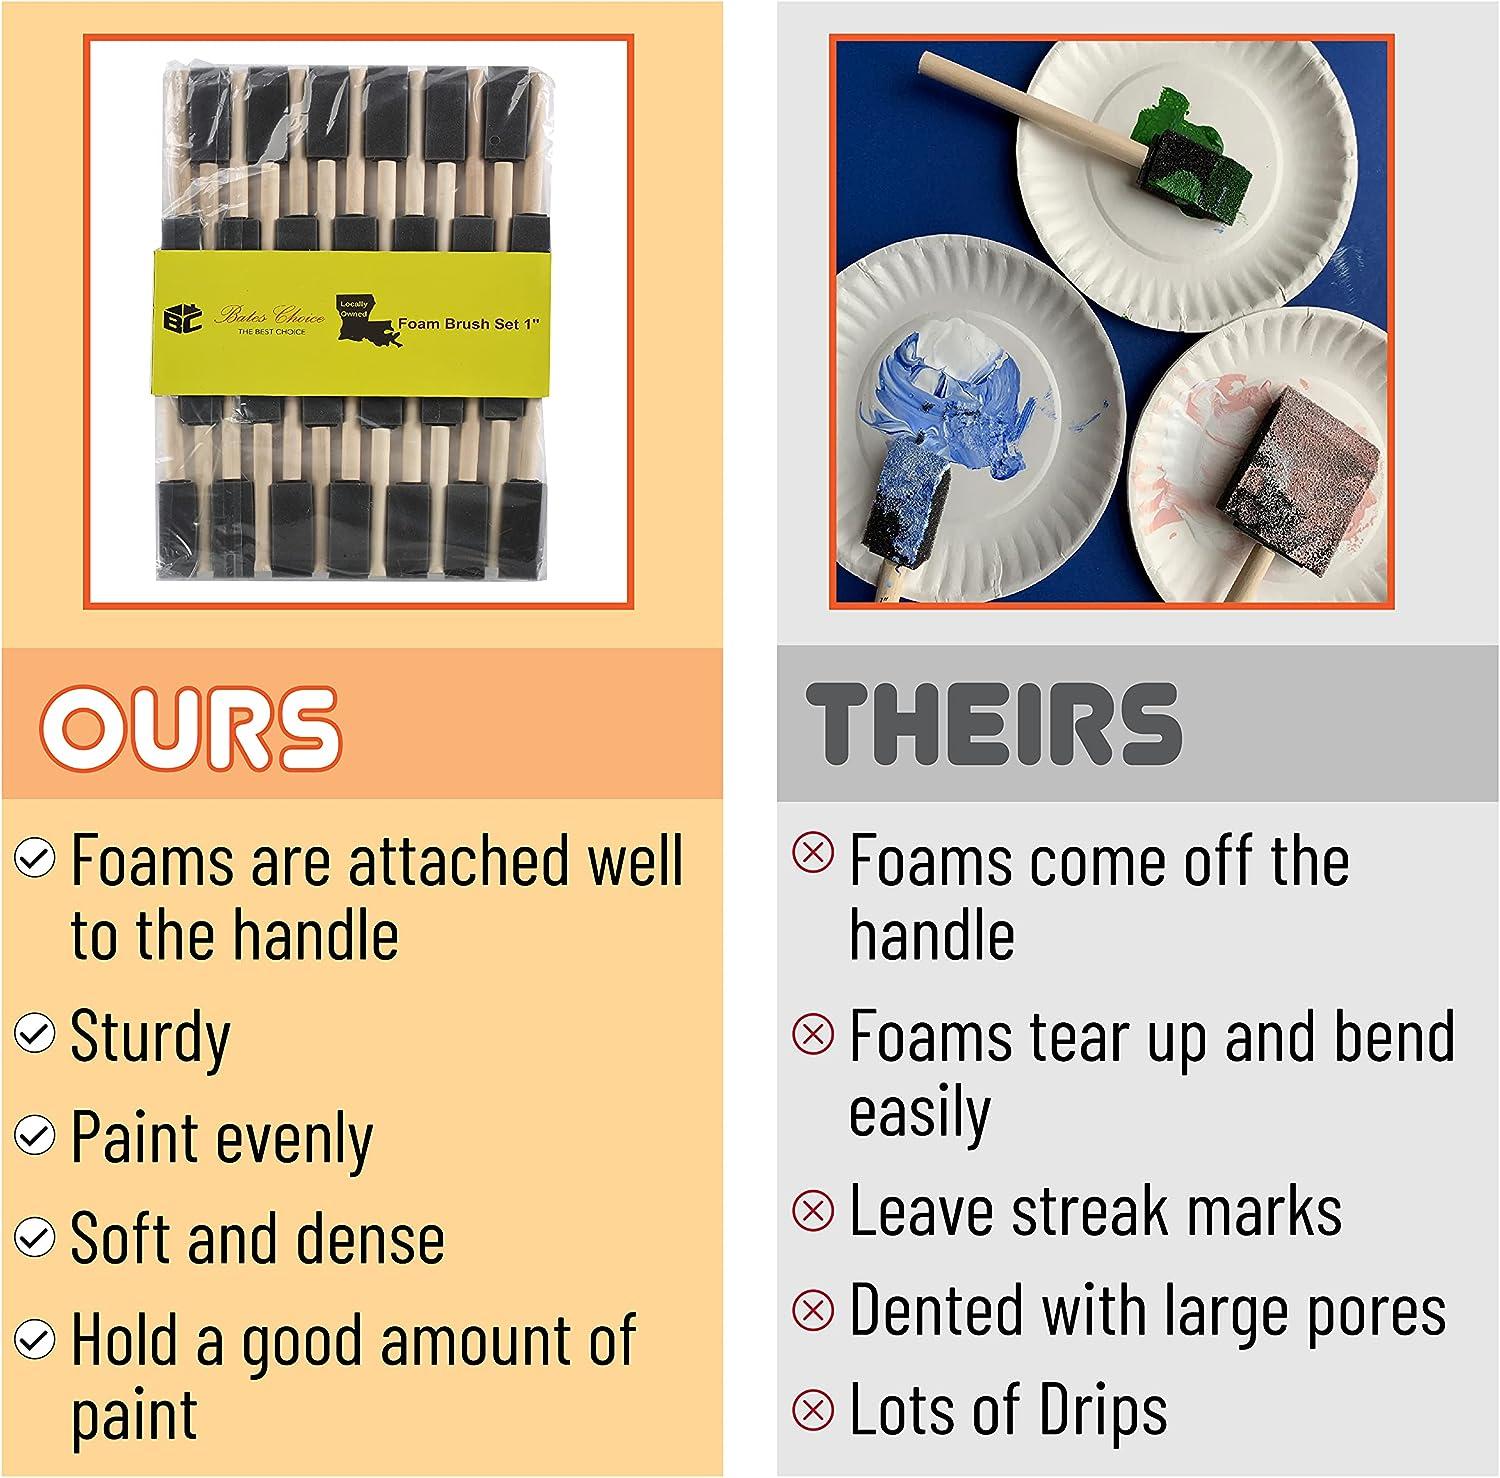 Bates- Foam Paint Brushes, 26 Pack, 1 Inch, Sponge Brushes, Sponge